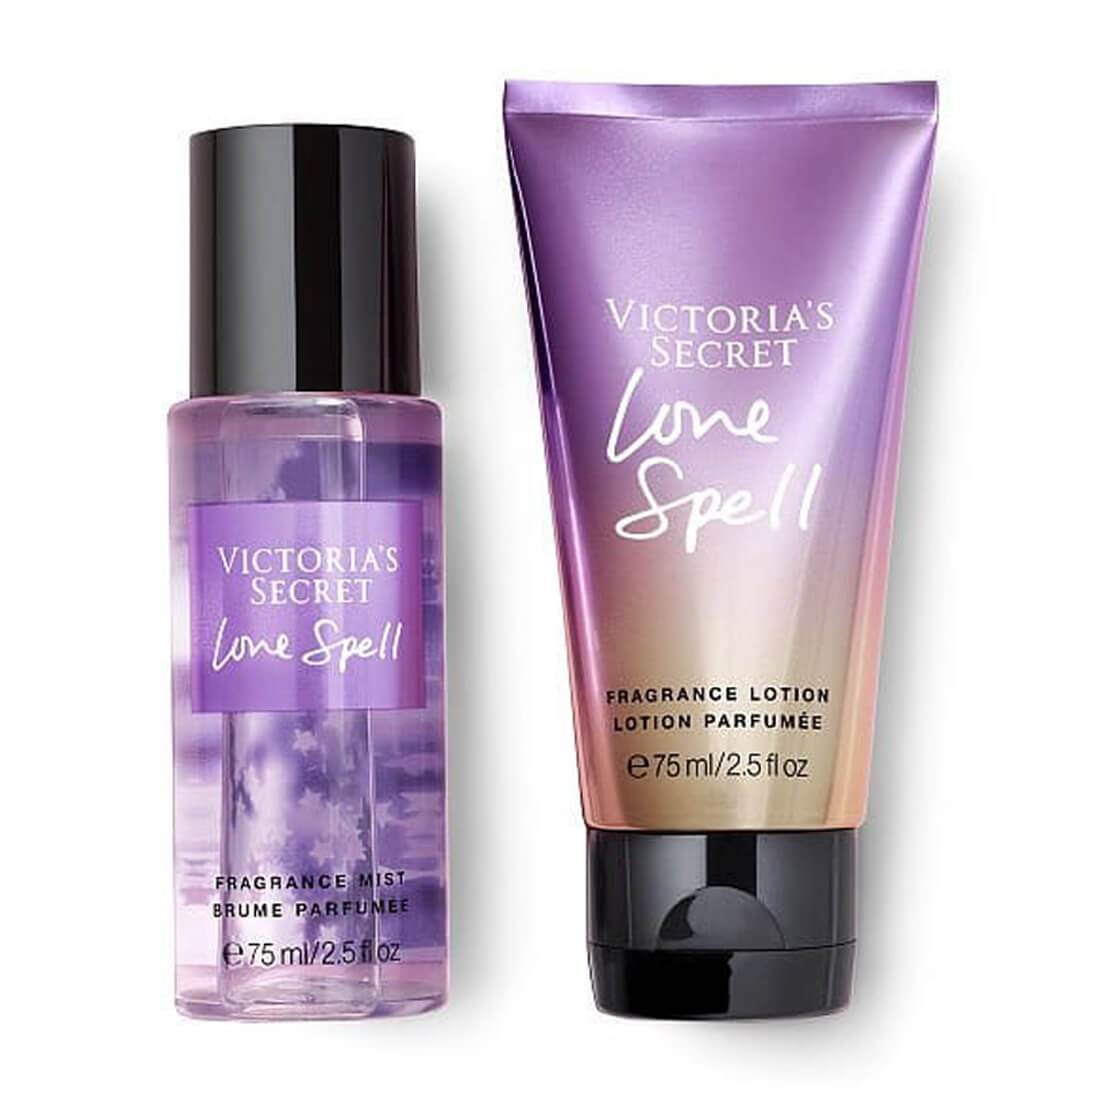 Victoria's Secret Love Spell Fragrance Gift Set Mist